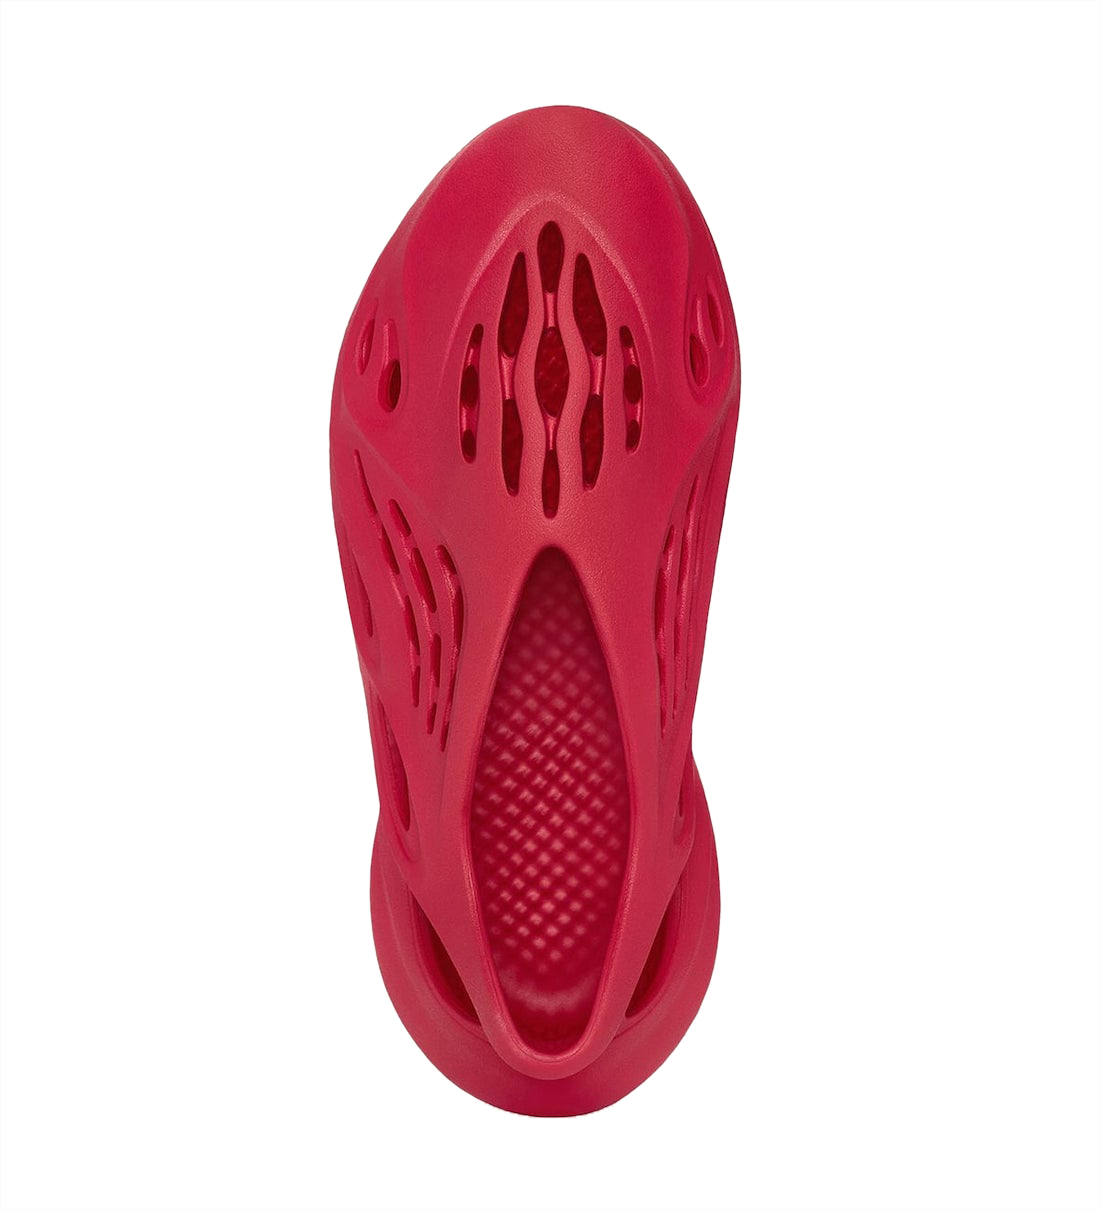 adidas Yeezy Foam Runner Vermilion GW3355